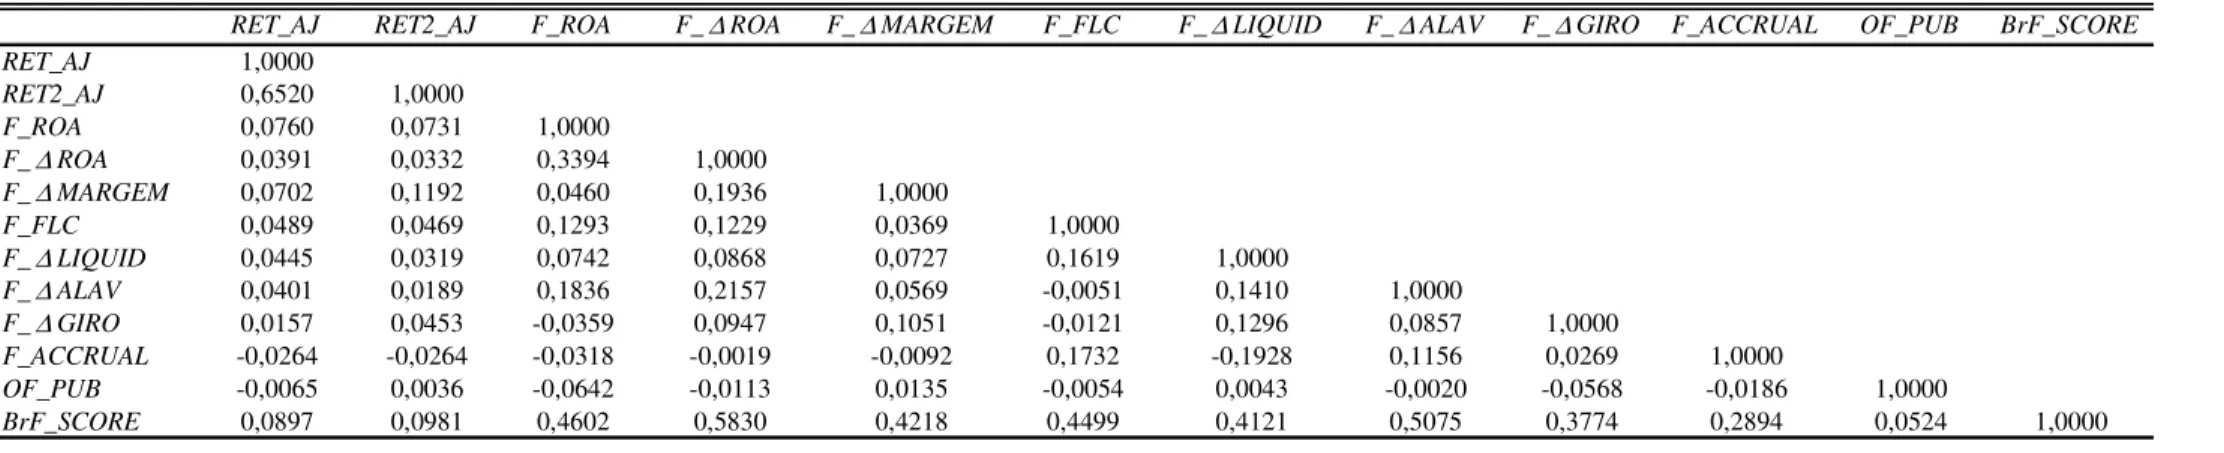 Tabela 4. Correlação de Spearman entre os componentes do BrF_SCORE e os retornos de 1 ano e 2 anos à frente ajustados pelo mercado   Painel A: Correlação de Sperman para todas as variáveis na amostra